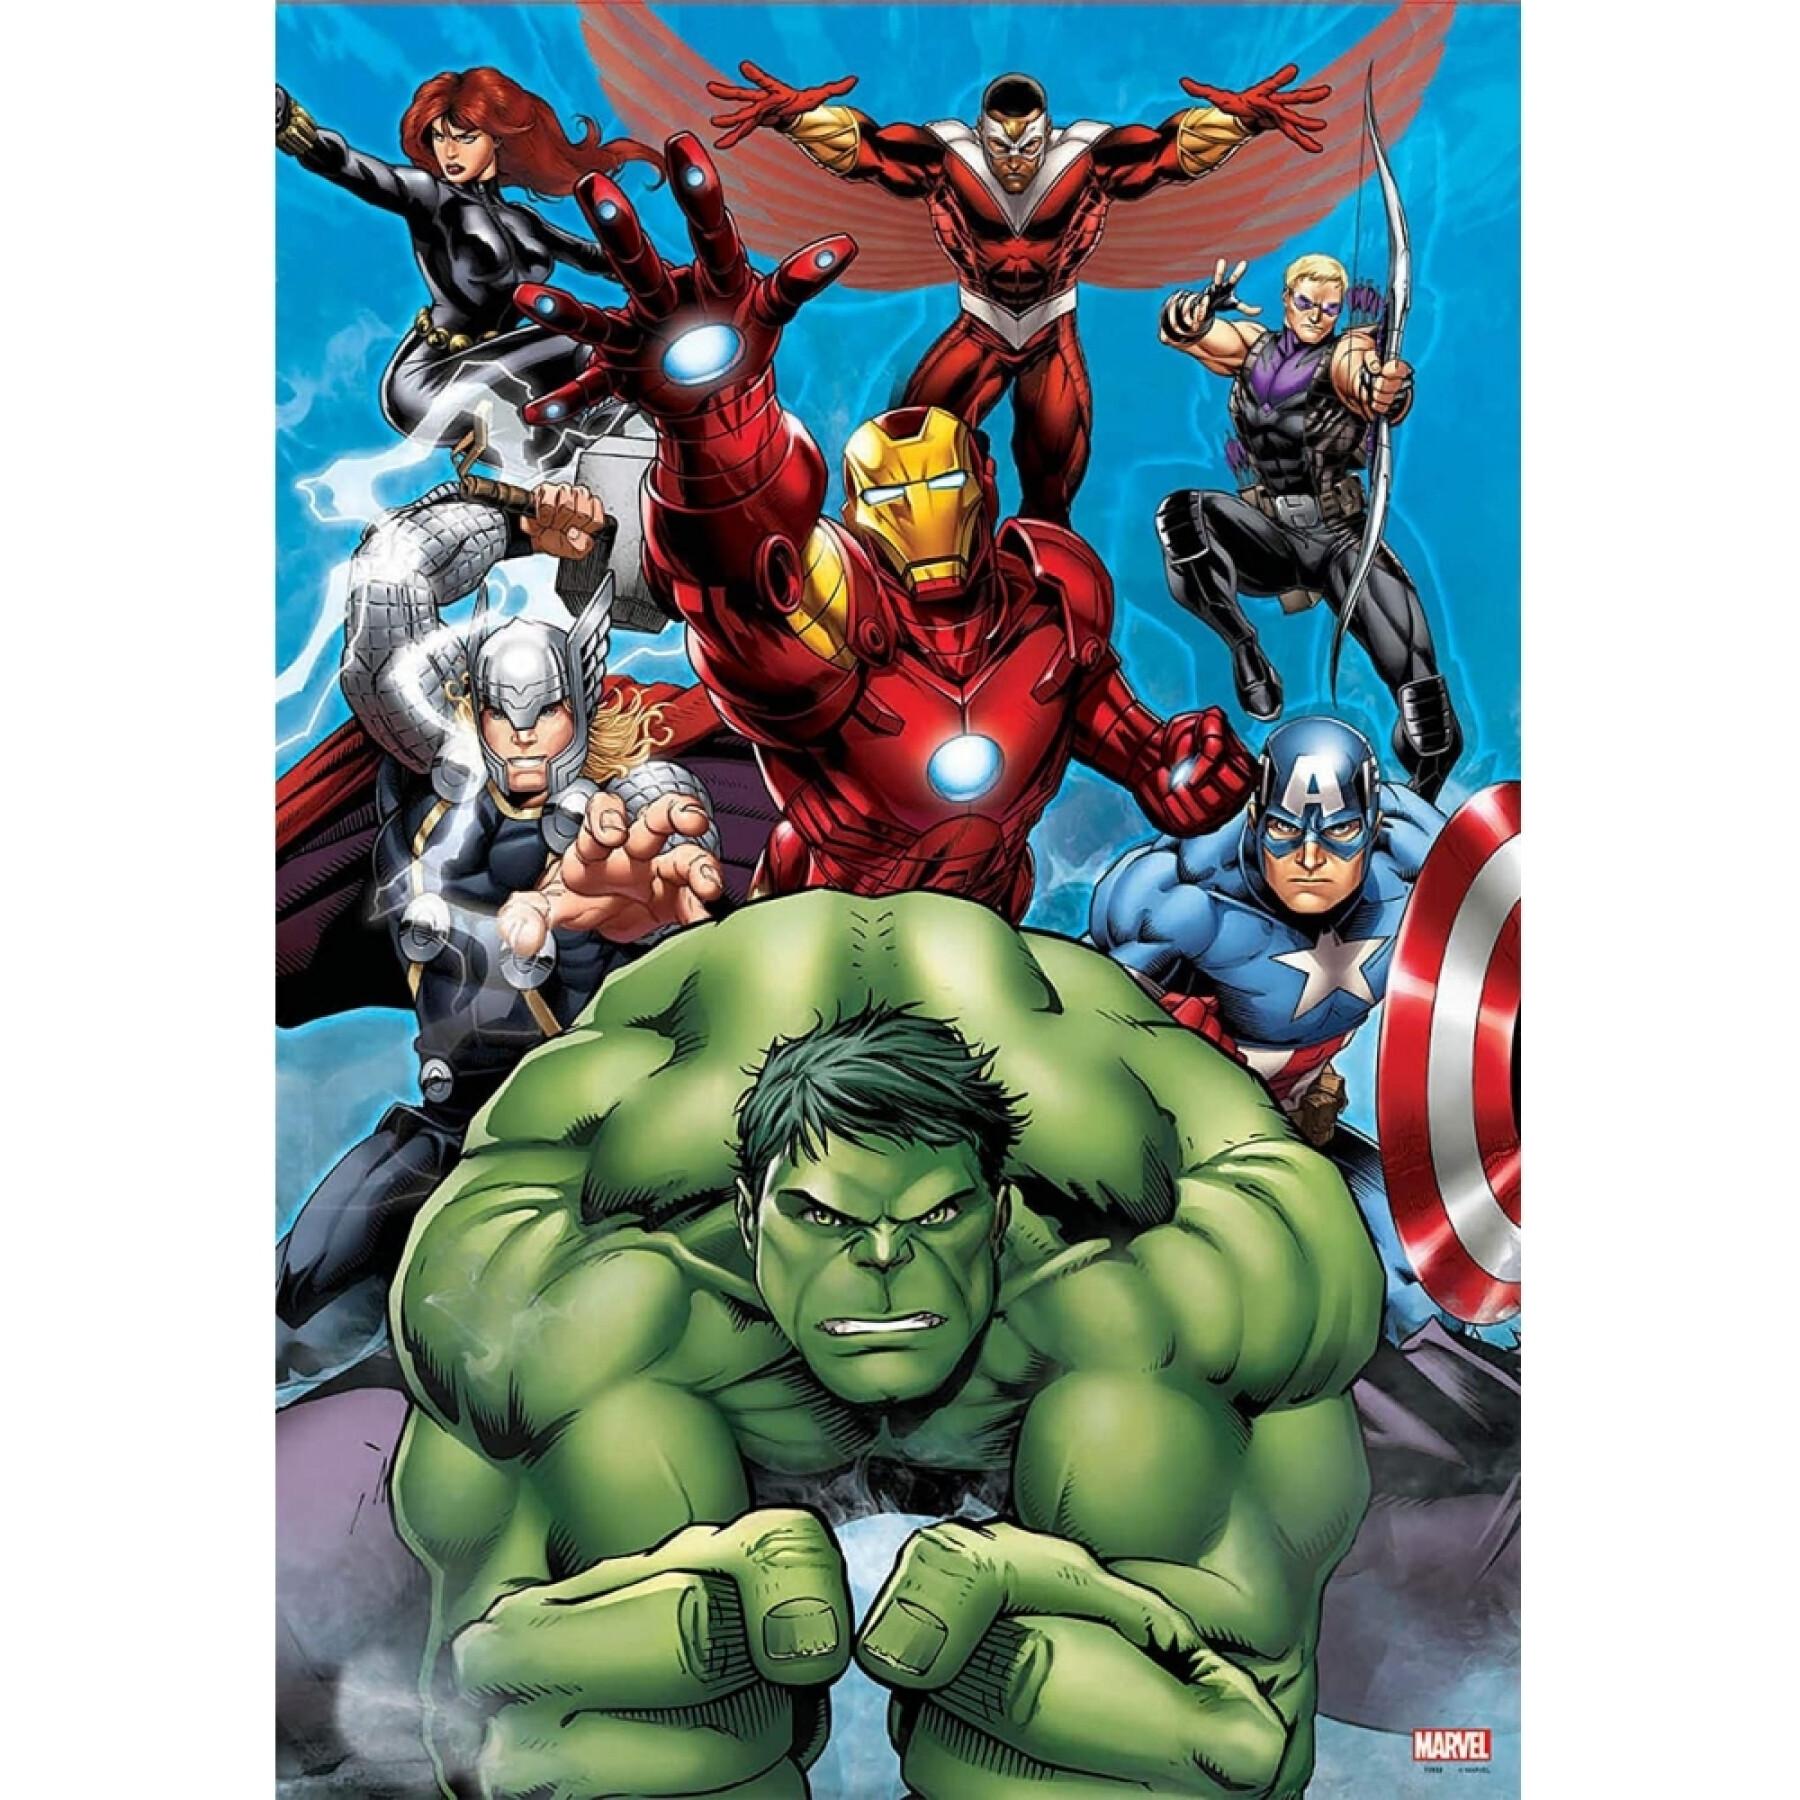 60 piece puzzle Marvel Avengers